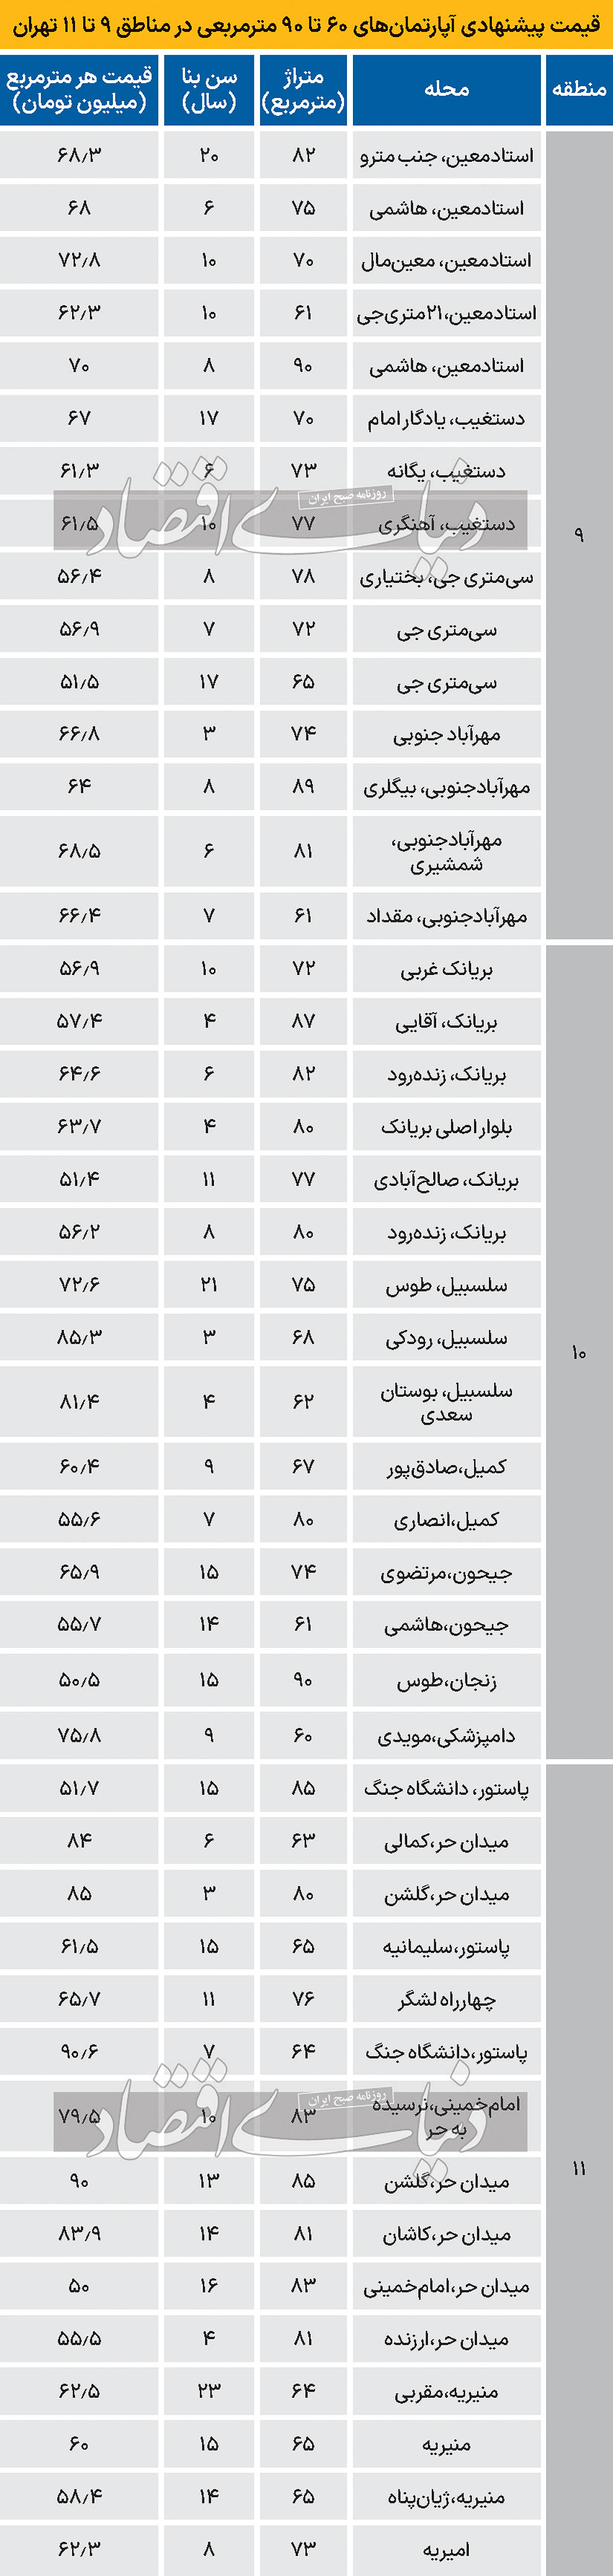 قیمت مسکن آپارتمان در مناطق ۹ تا ۱۱ تهران